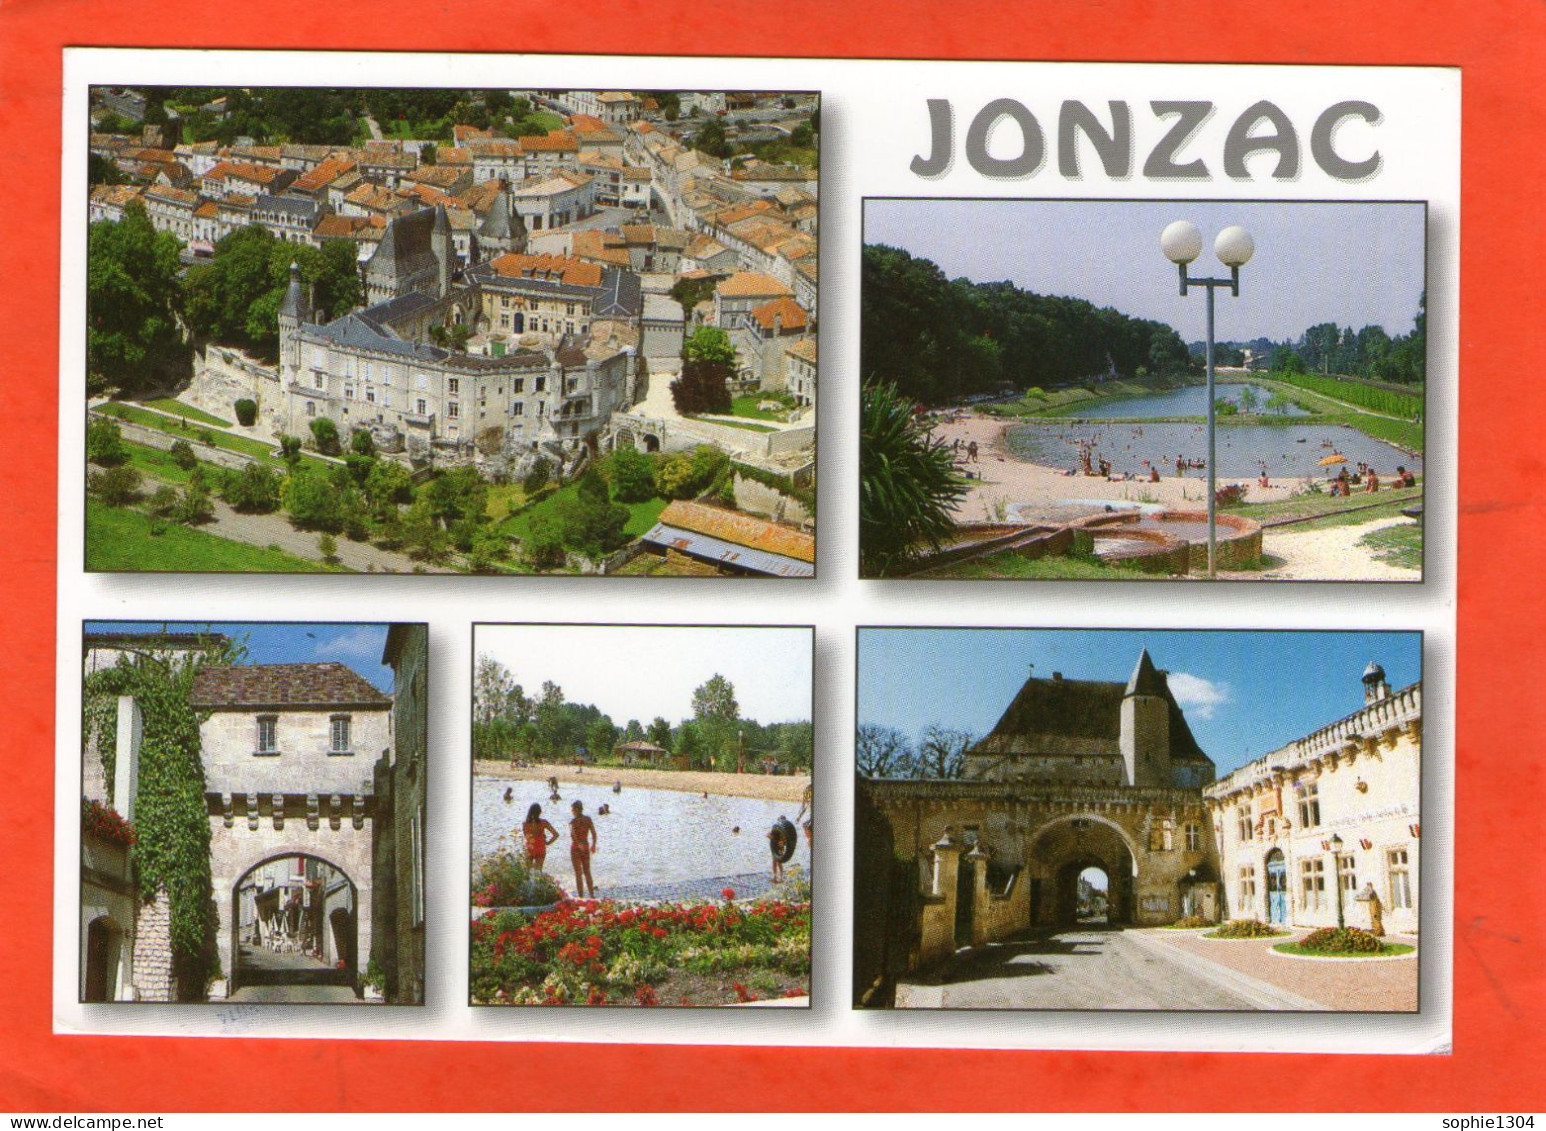 JONZAC - Jonzac